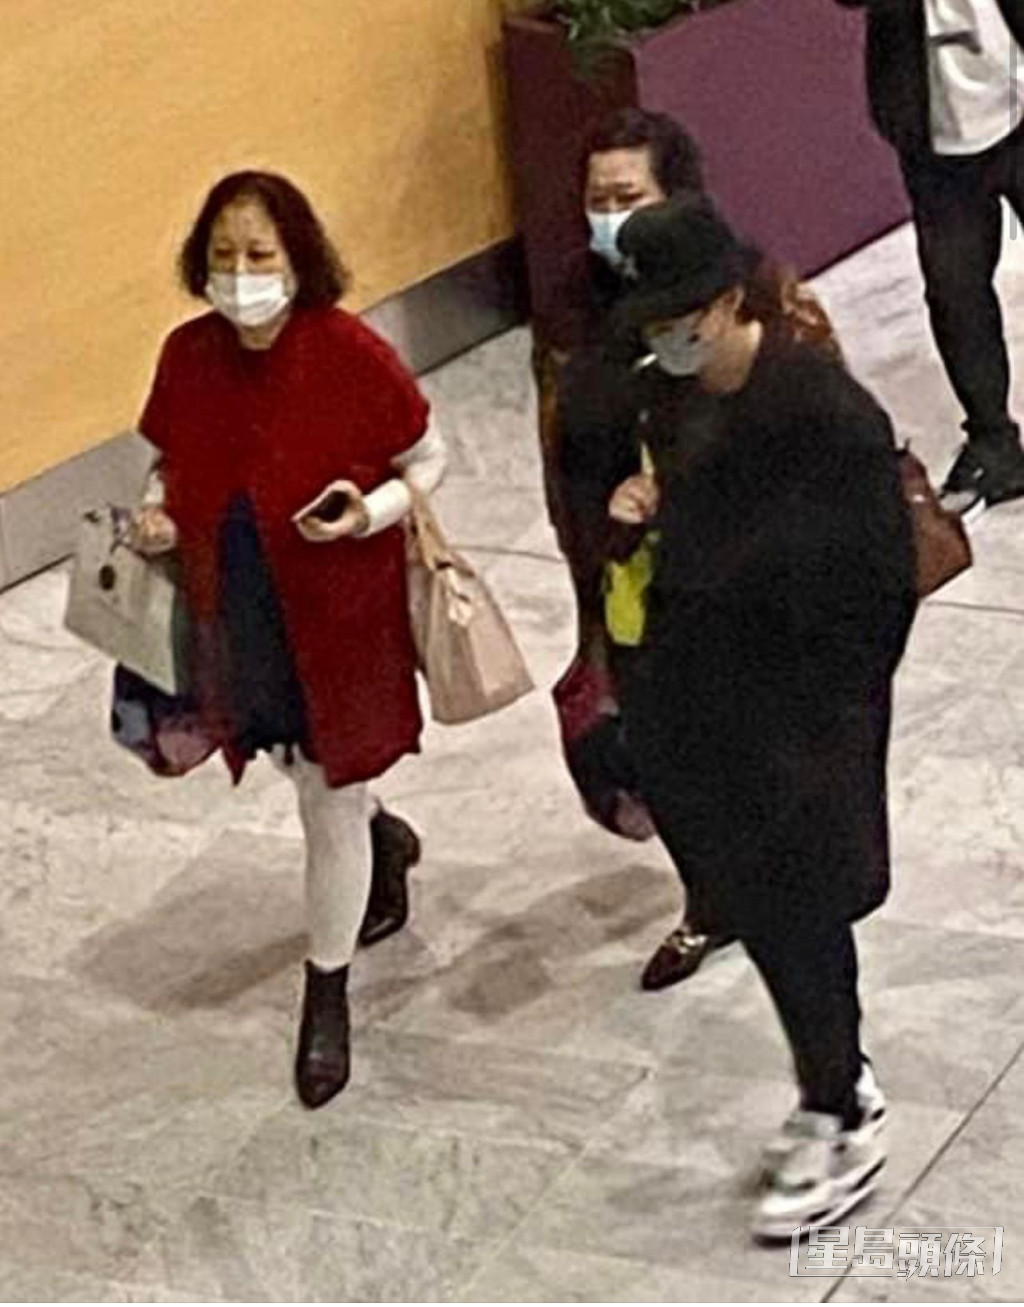 粉絲在法國機場捕獲姜濤與媽咪、姨媽。